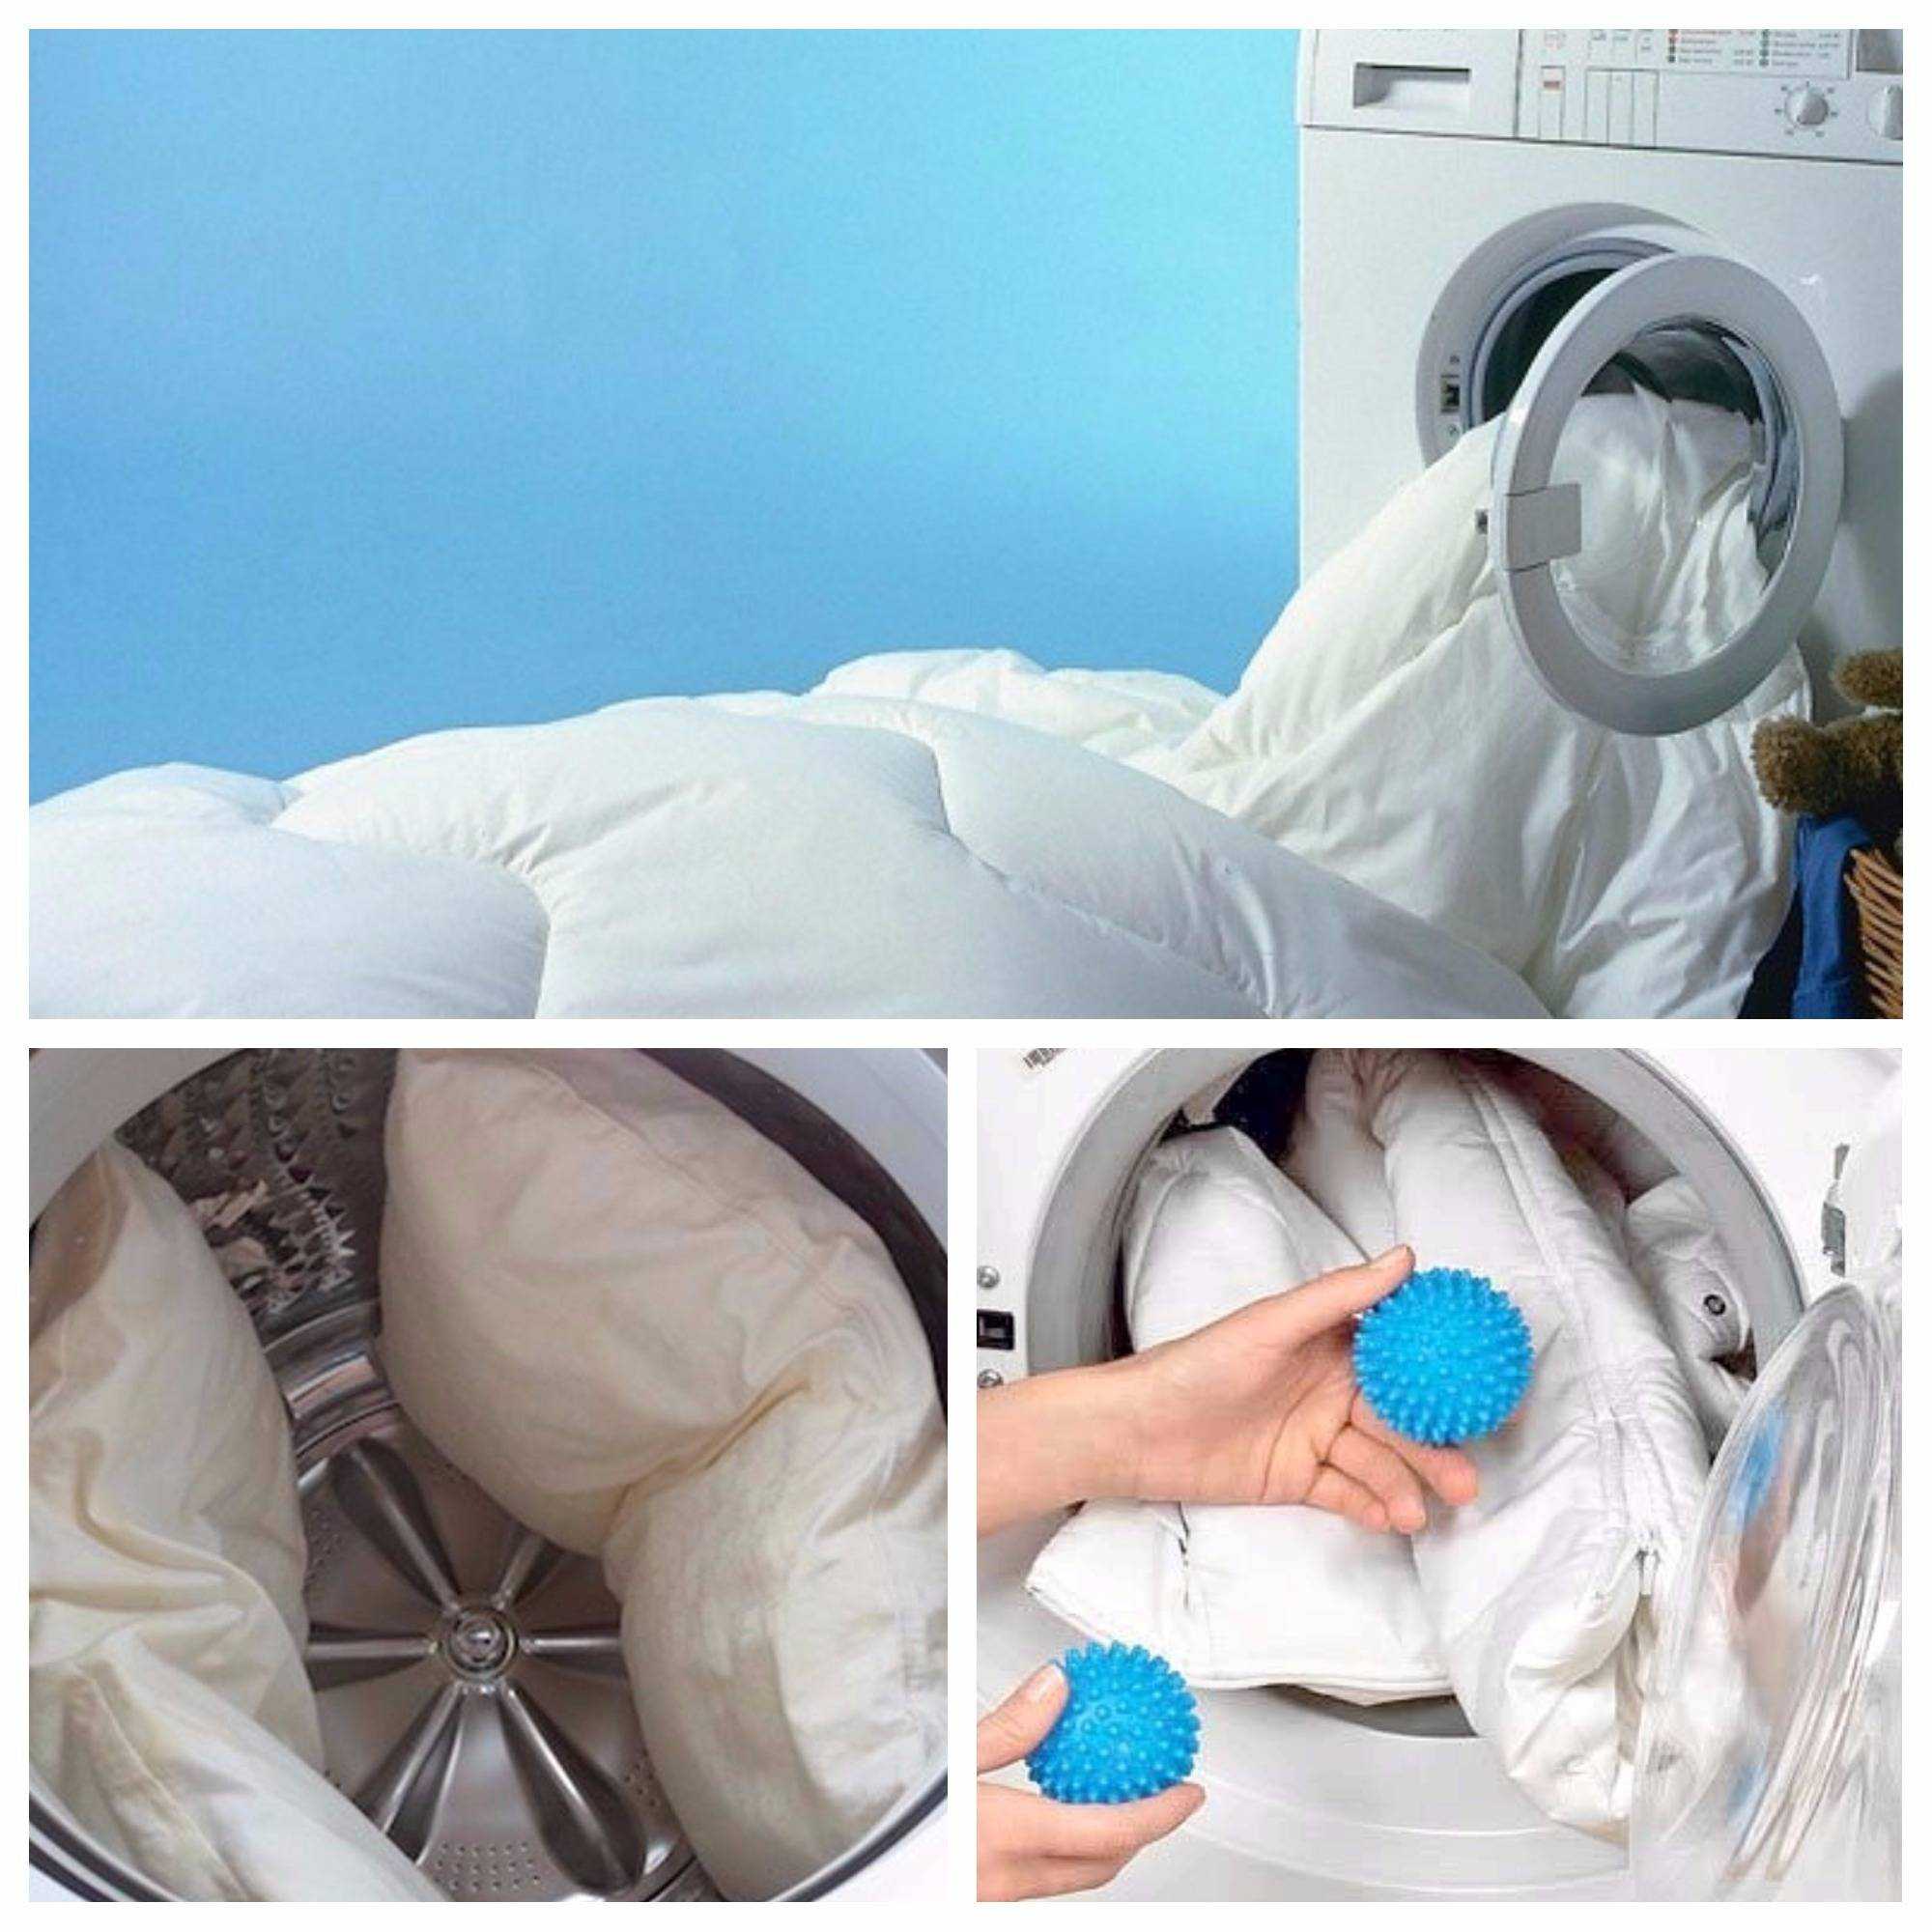 Правильная стирка пледа в стиральной машине: шерстяного, мериносового и из других материалов На каком режиме можно стирать плед